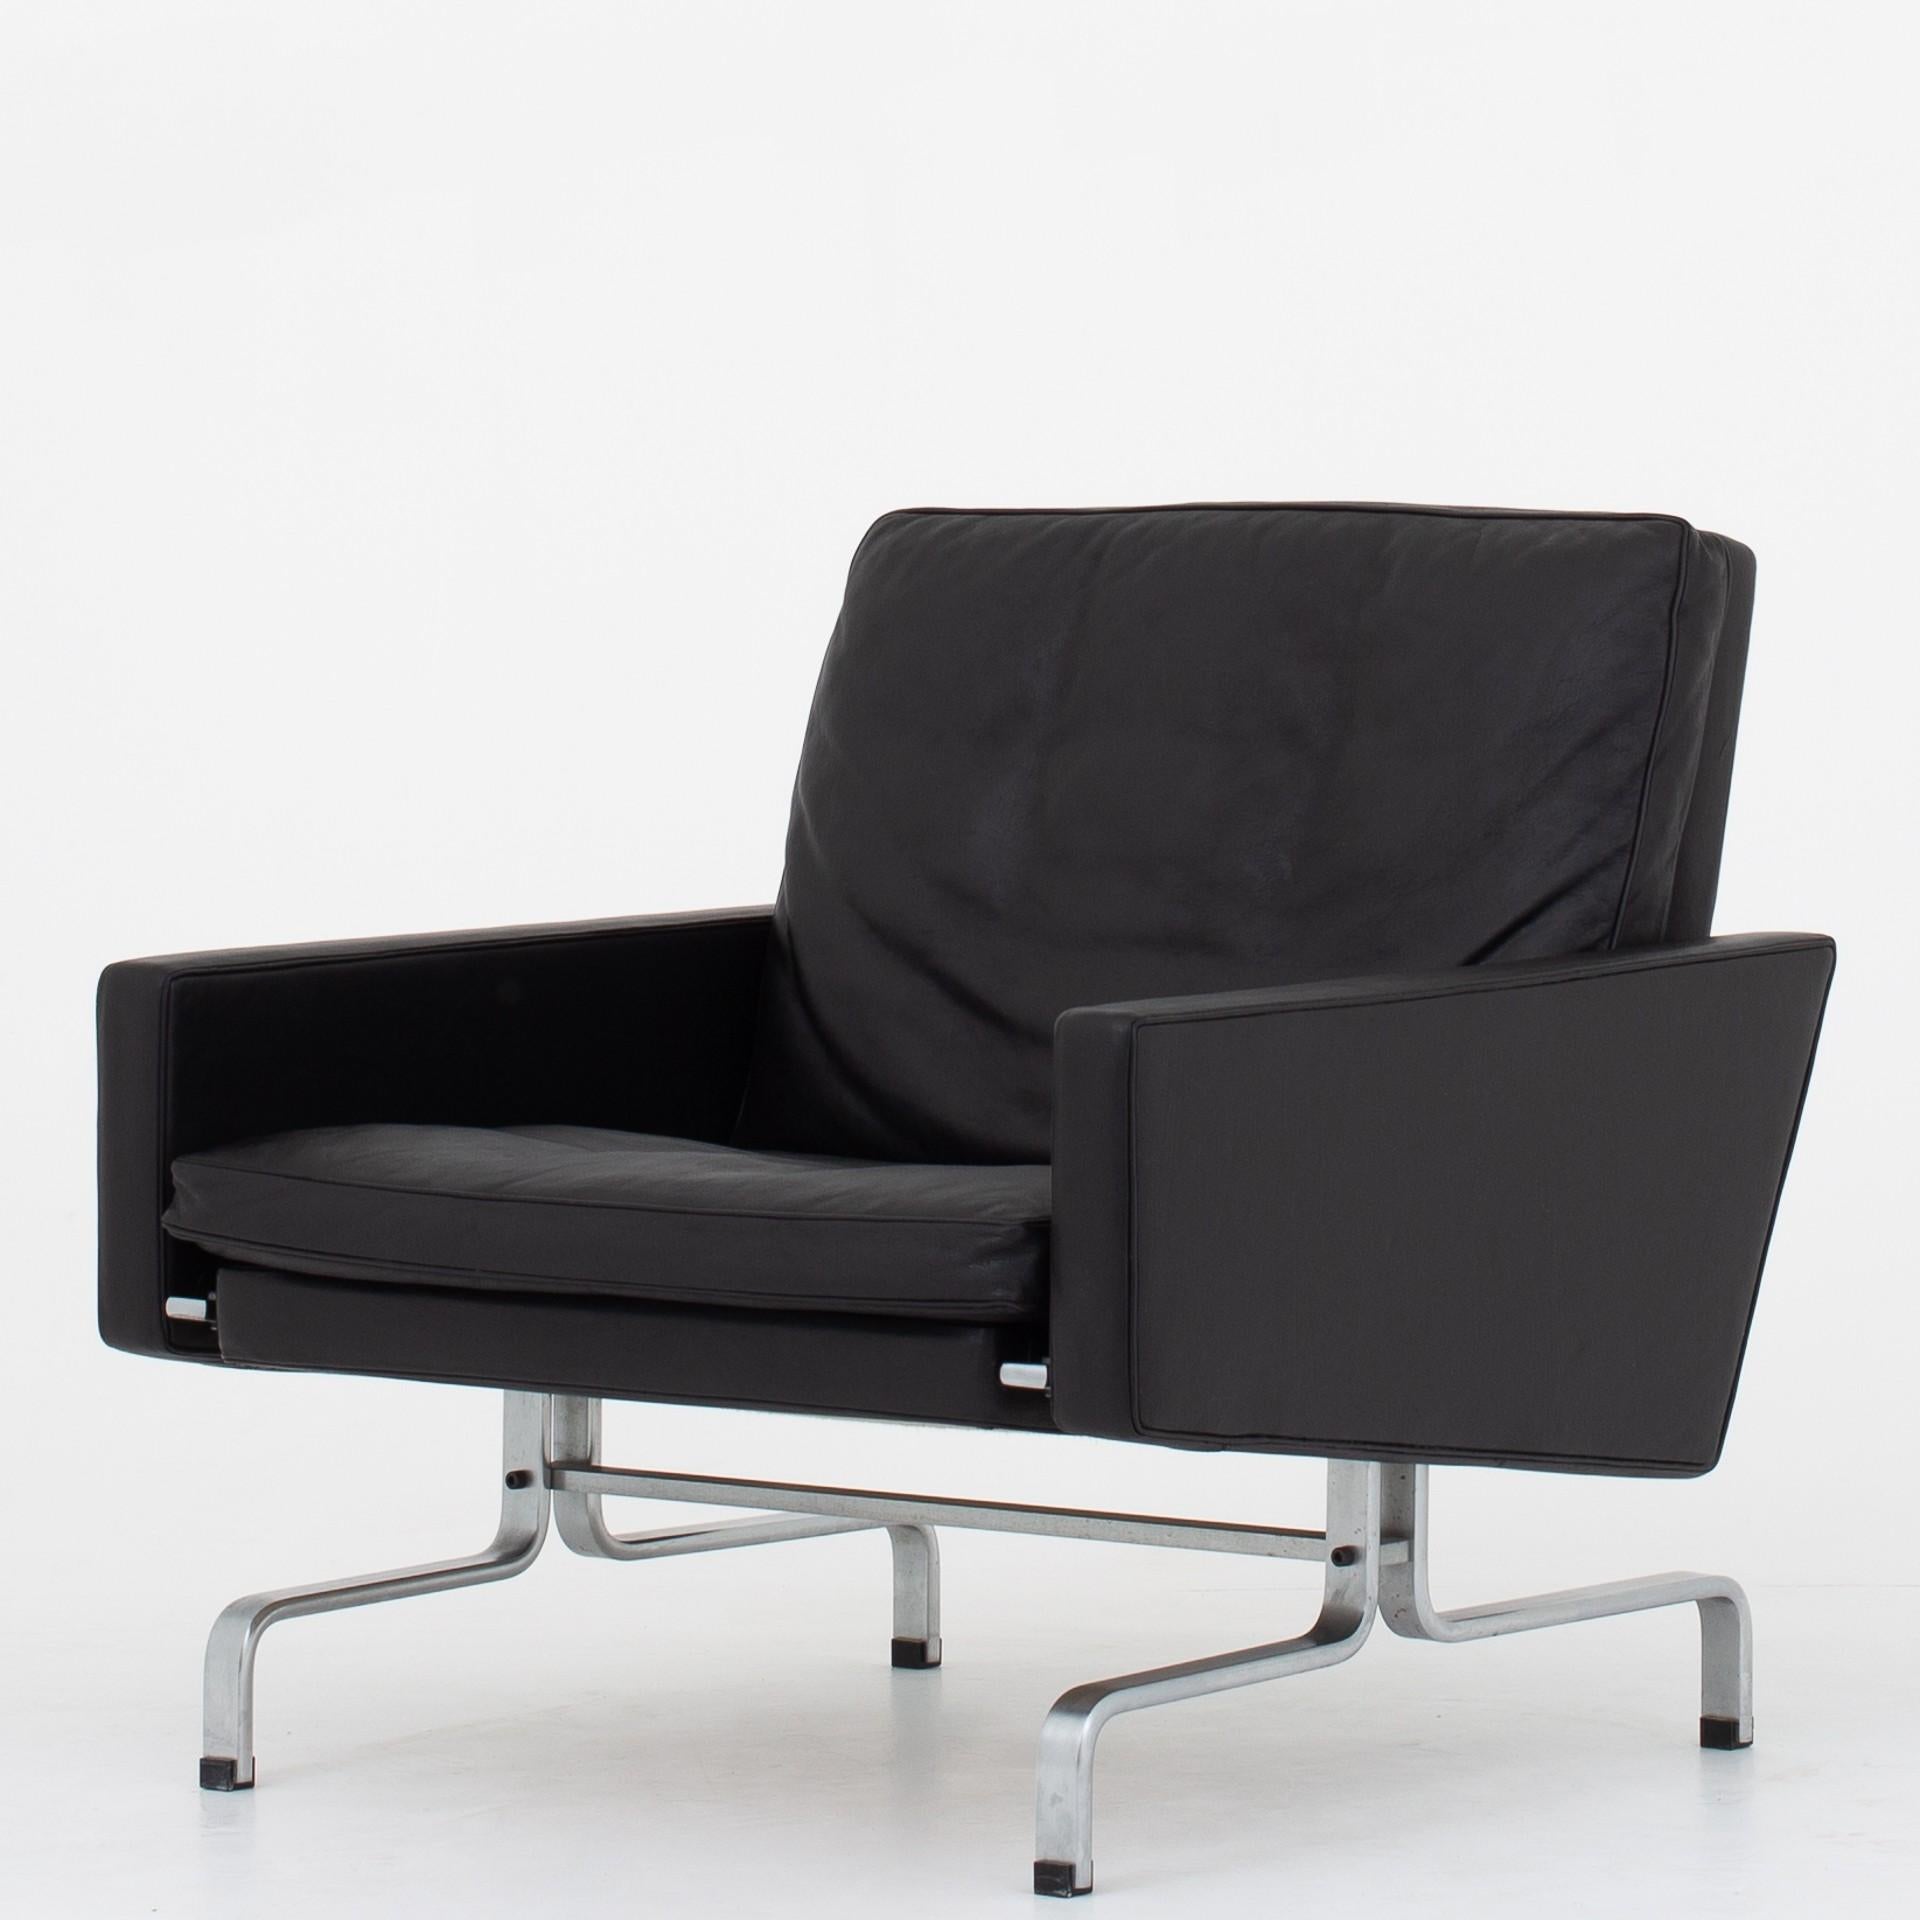 Set of two PK 31 - Easy chairs in original black leather and frame in matt chromed steel. Maker E. Kold Christensen.